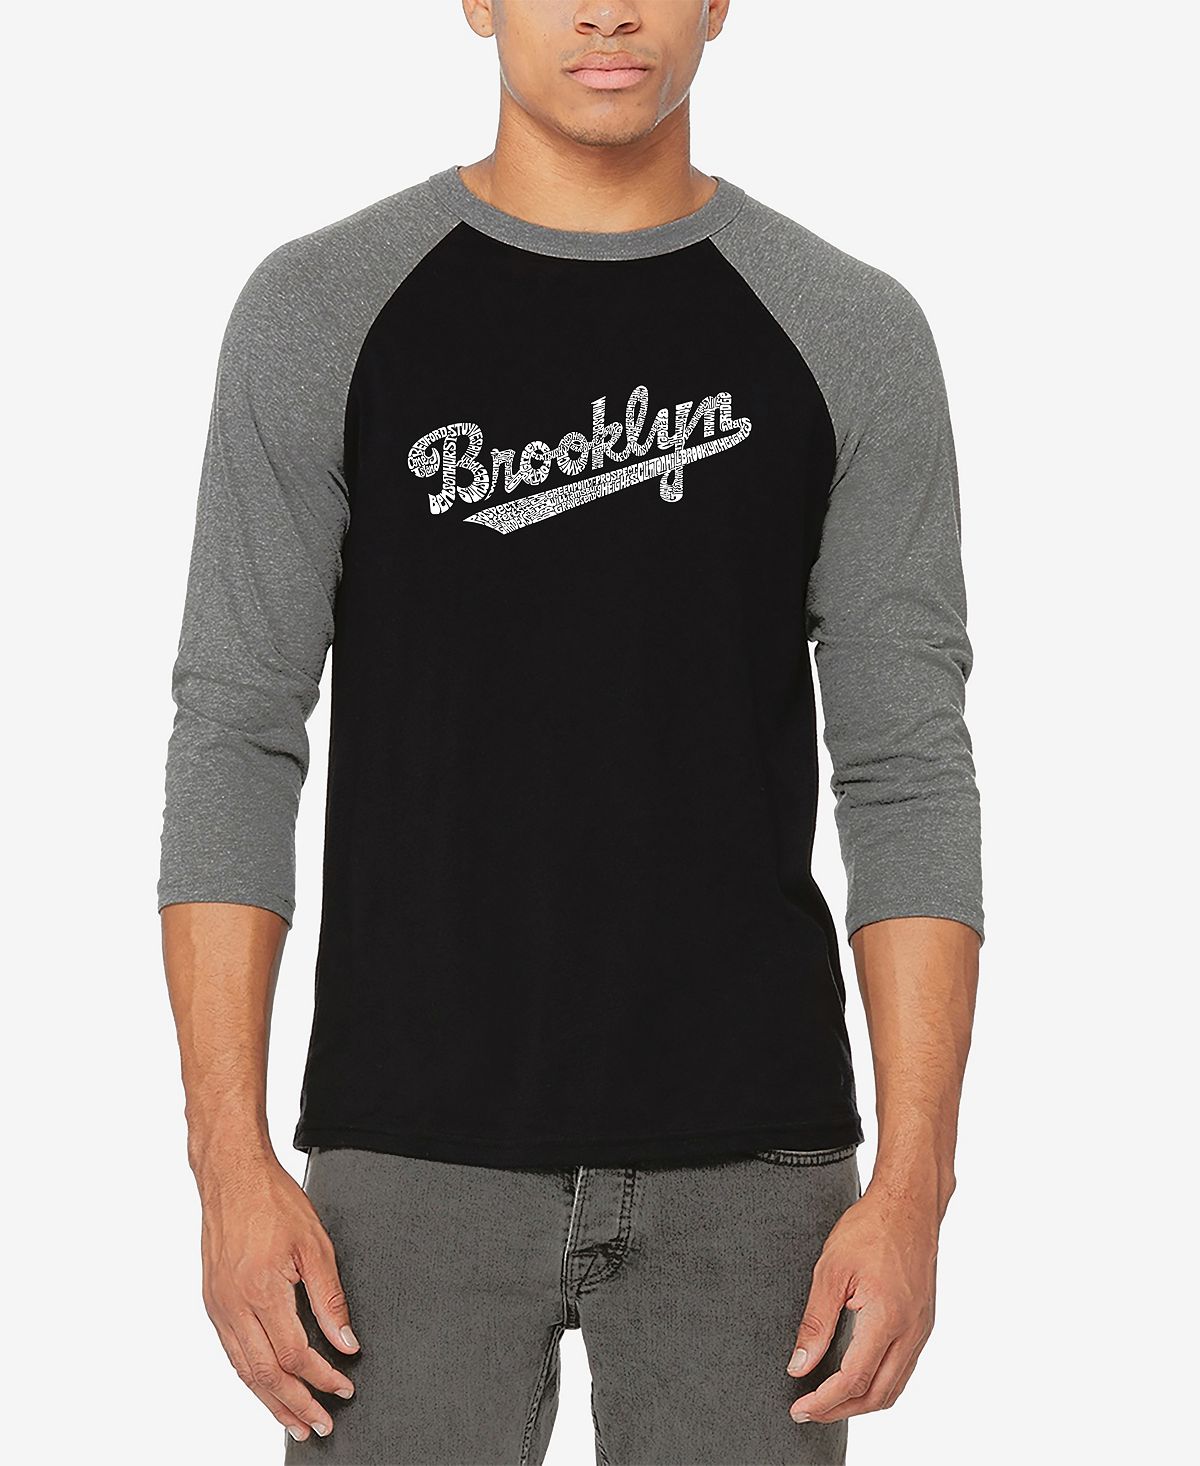 Мужская футболка с бейсболом реглан word art brooklyn neighborhoods LA Pop Art, мульти мужская футболка реглан с надписью bronx neighborhoods la pop art серый